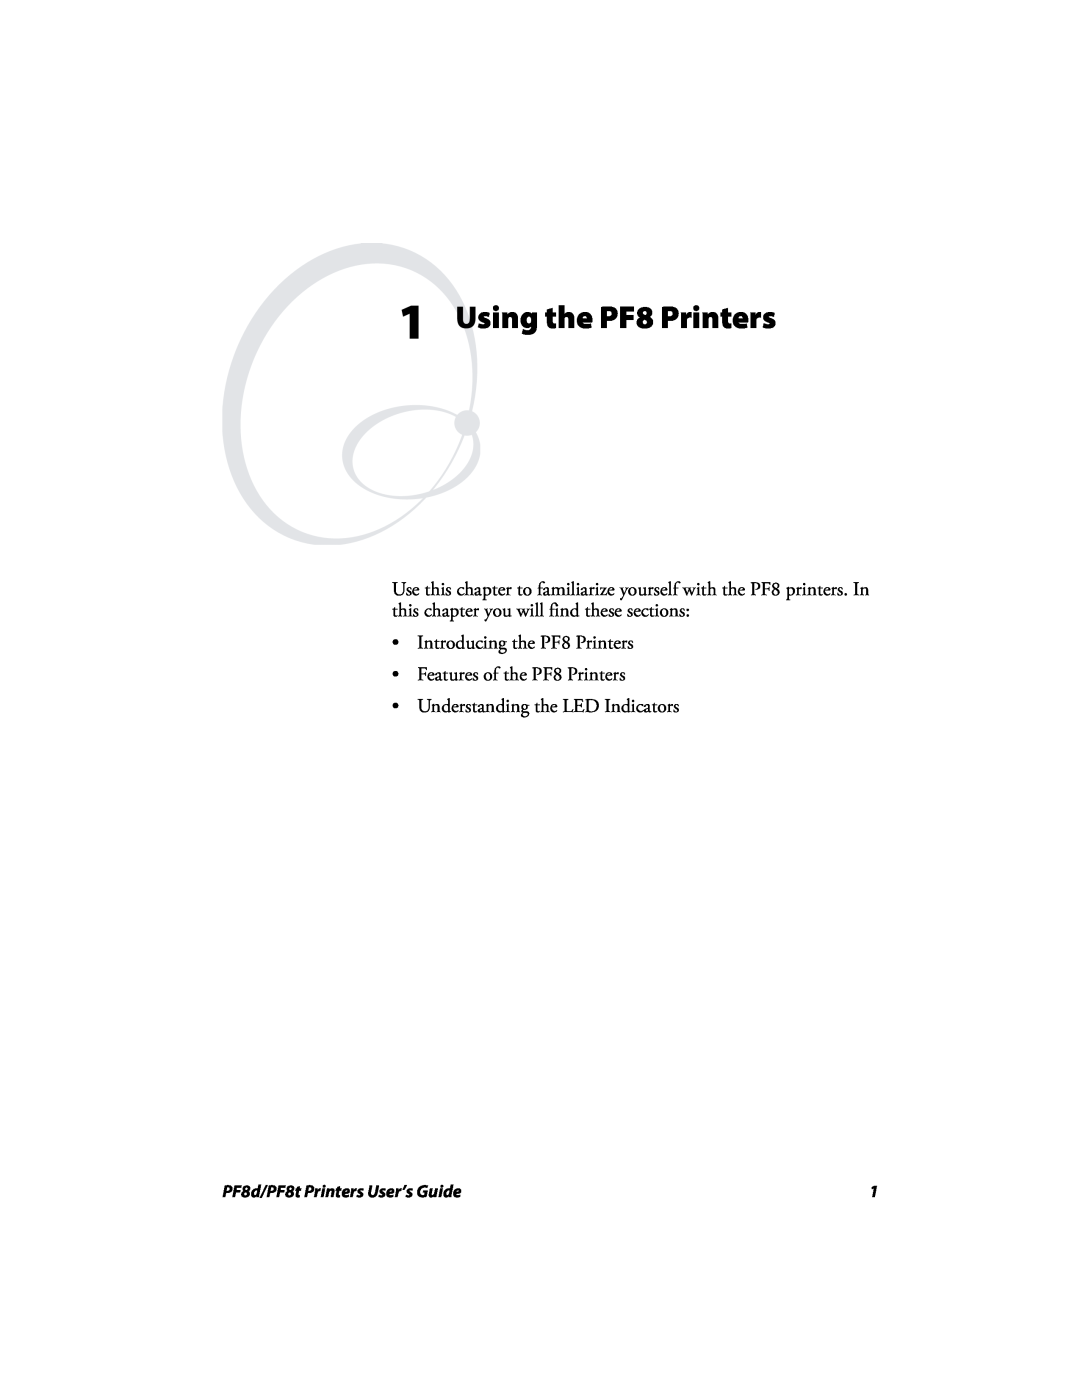 Intermec PF8T, PF8D manual Using the PF8 Printers, Introducing the PF8 Printers Features of the PF8 Printers 